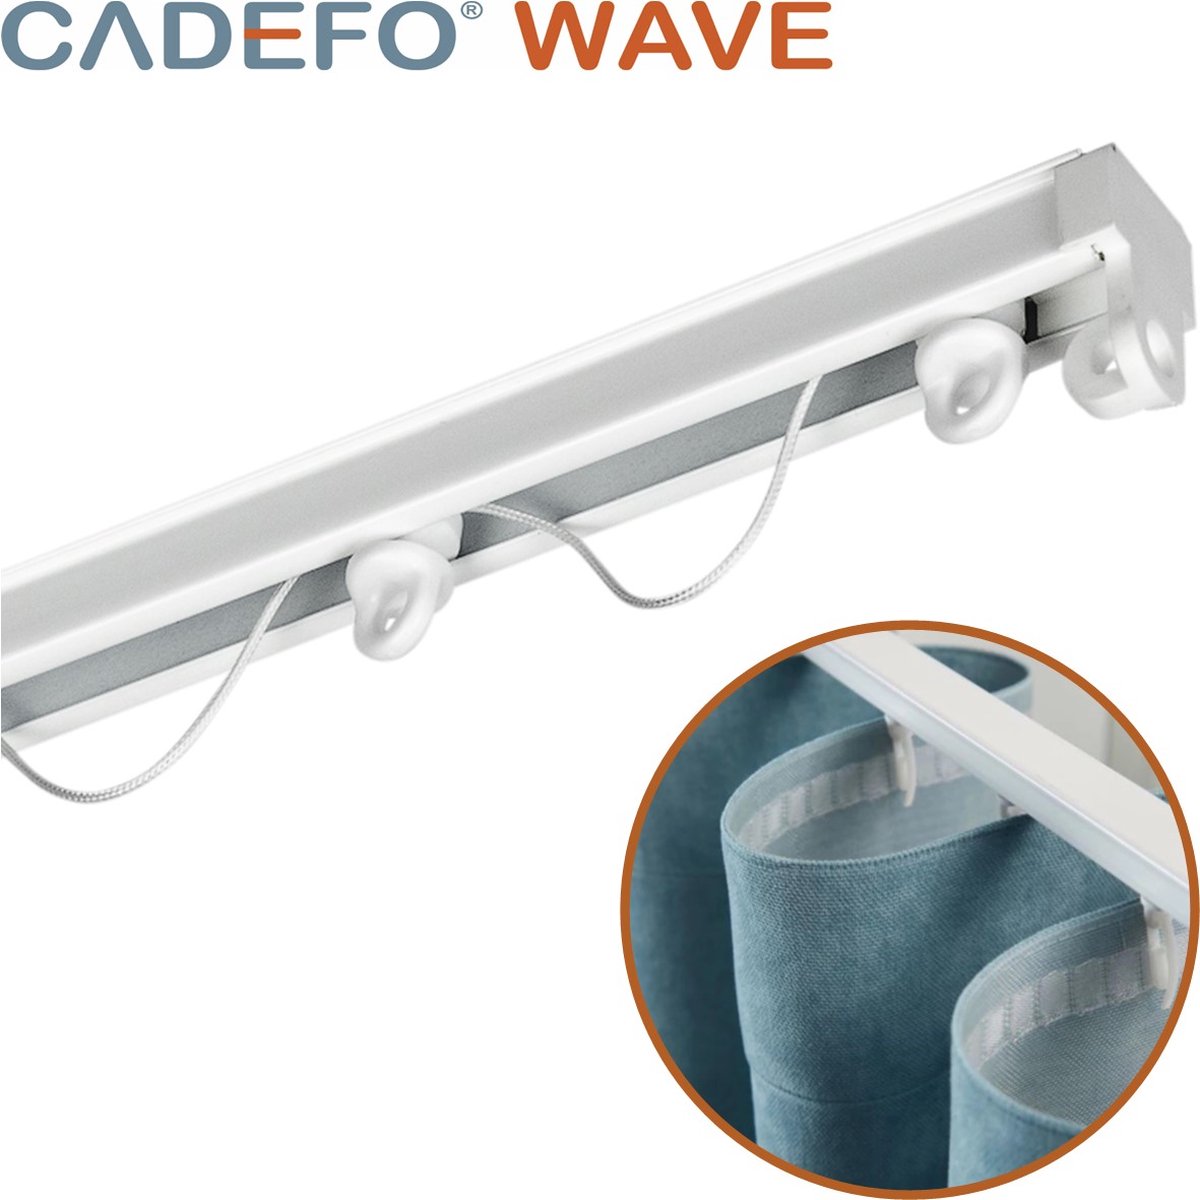 CADEFO WAVE (451 - 500 cm) Gordijnrails - Compleet op maat! - UIT 1 STUK - Leverbaar tot 6 meter - Plafondbevestiging - Lengte 497 cm